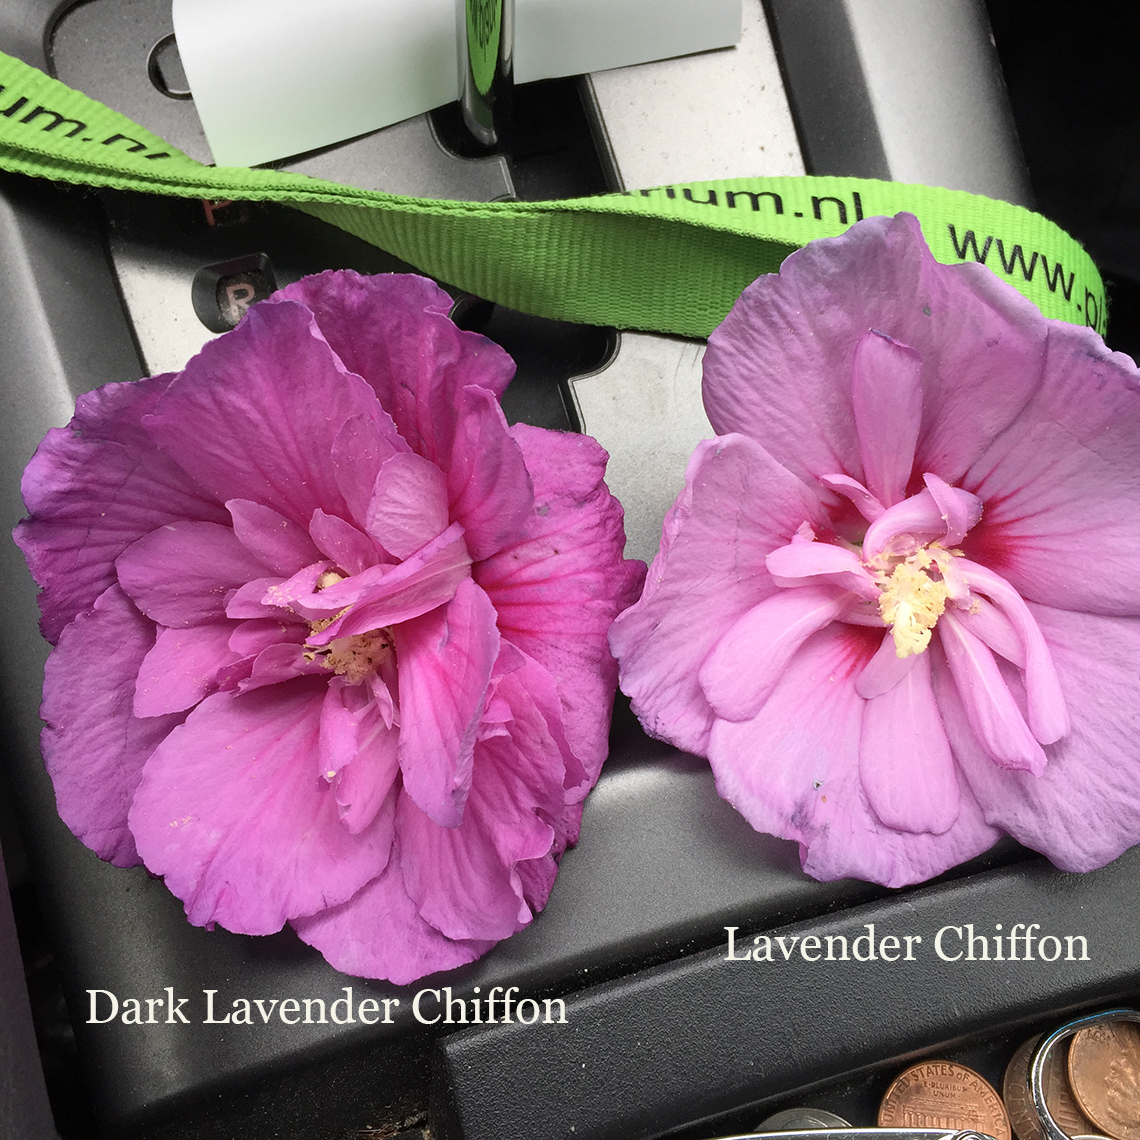 Dark Lavender Chiffon Color Comparison to Lavender Chiffon